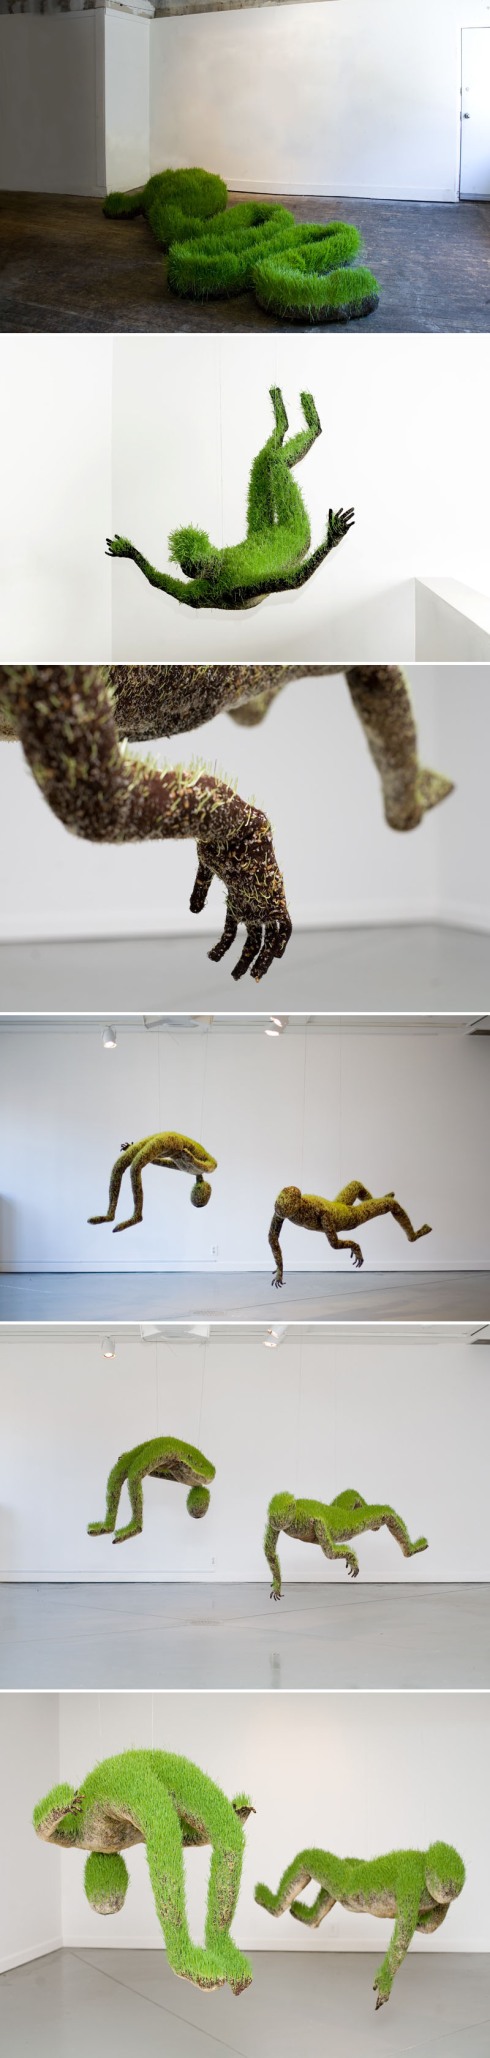 Grass sculptures, contemporary sculpture, cool art installation, mathilde roussel